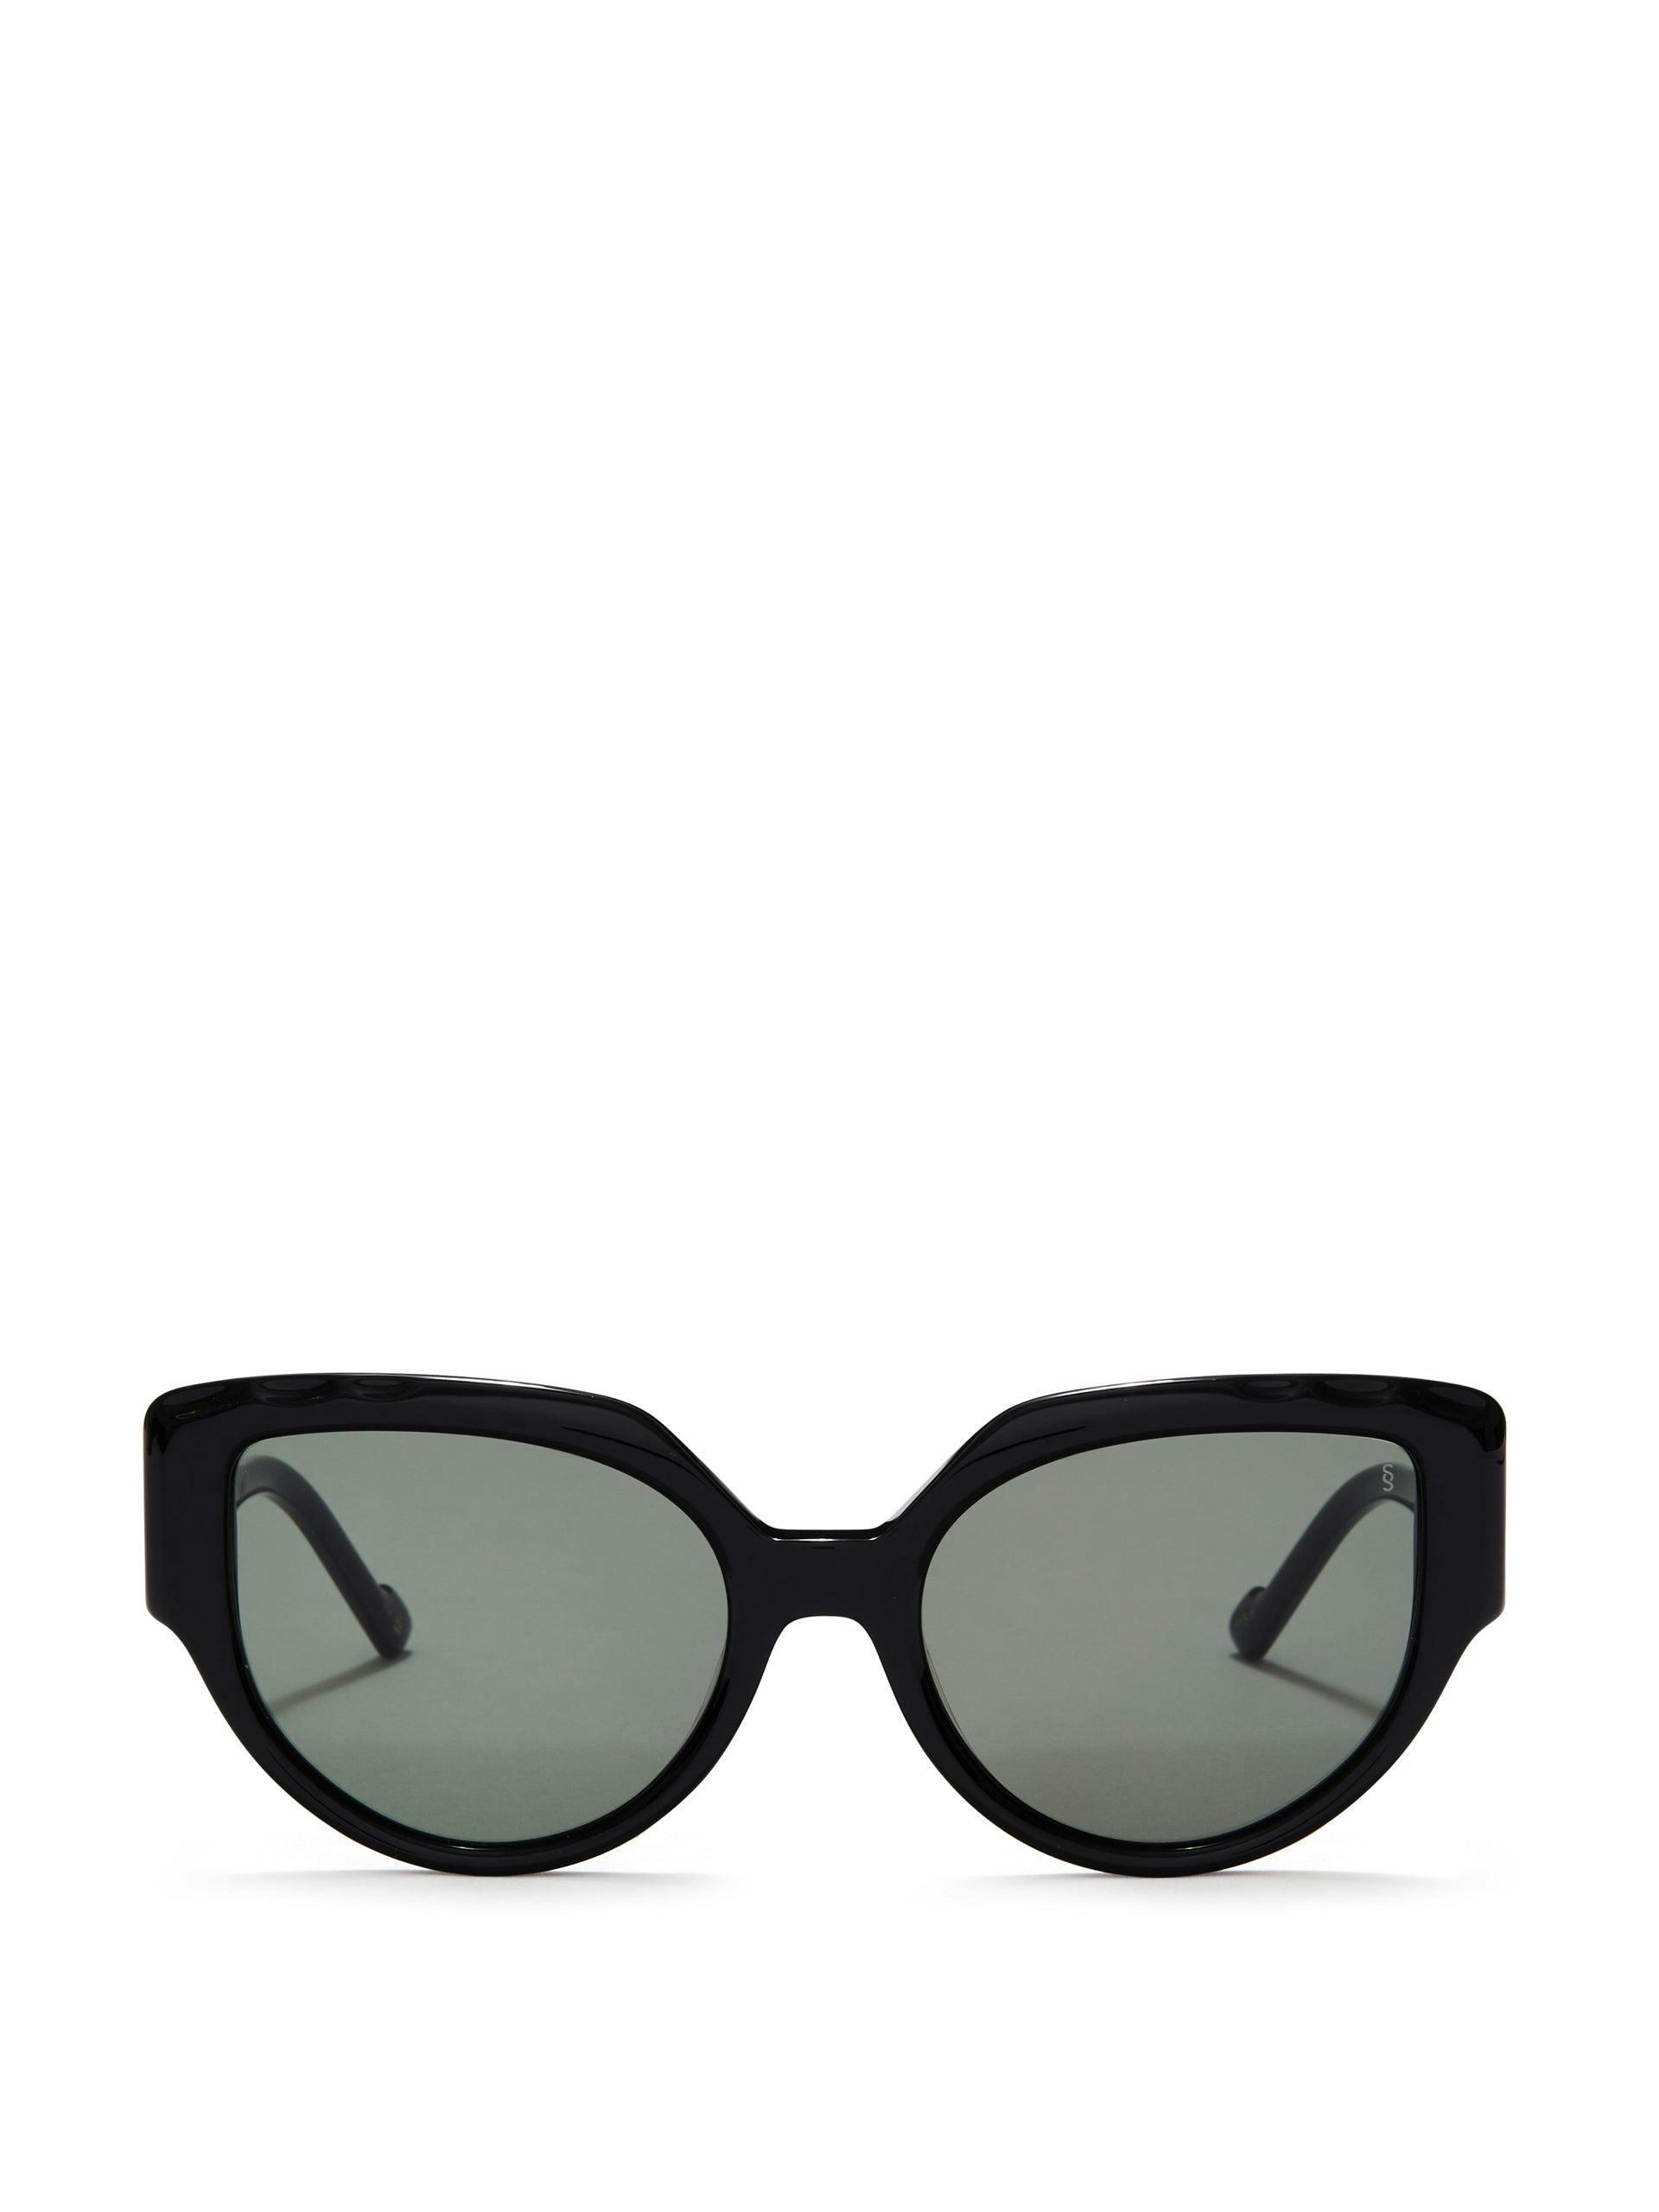 Lyla sunglasses in black